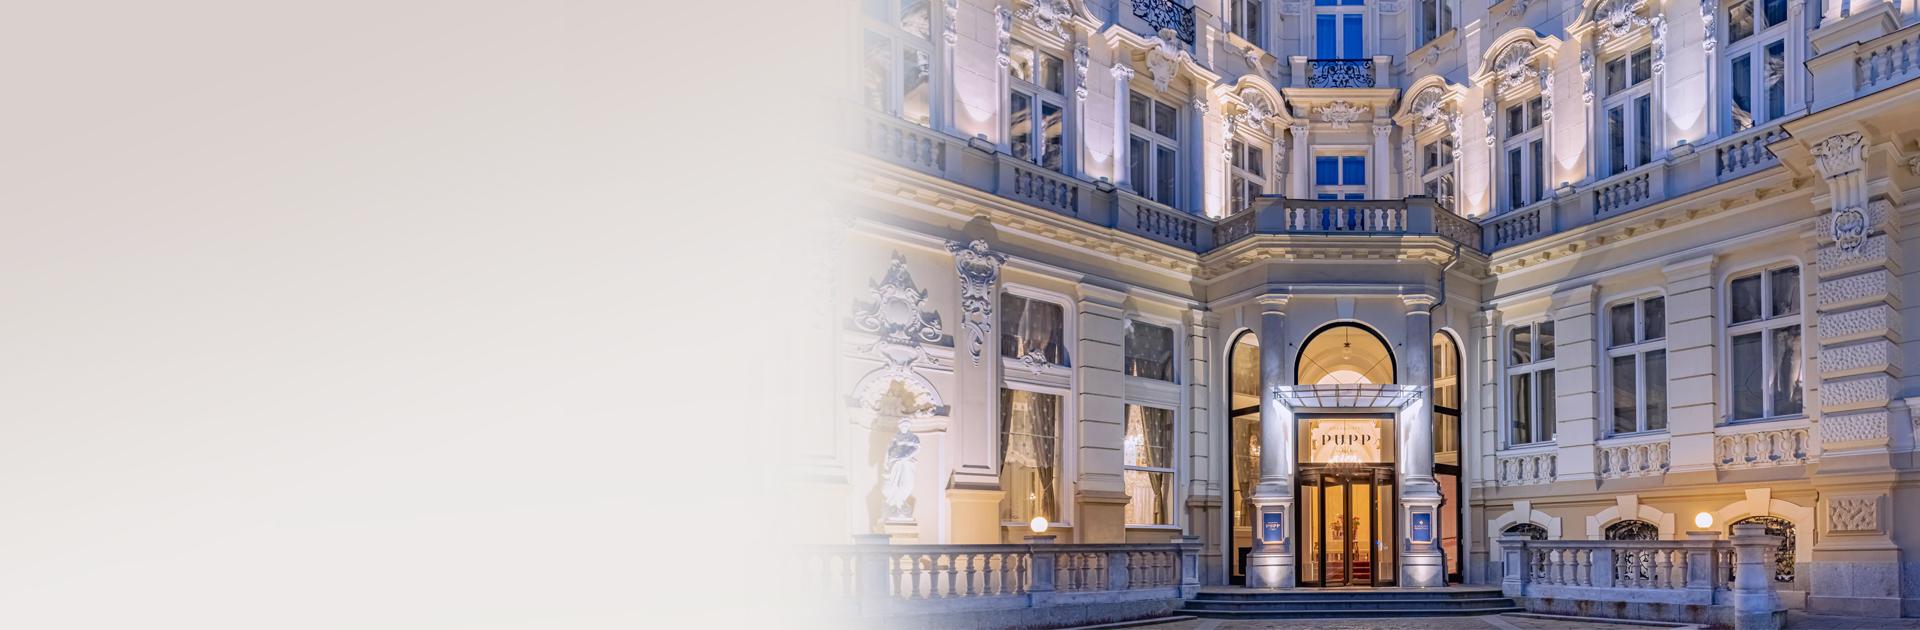 Asklepion eröffnete eine neue Filiale im Grandhotel Pupp in Karlovy Vary